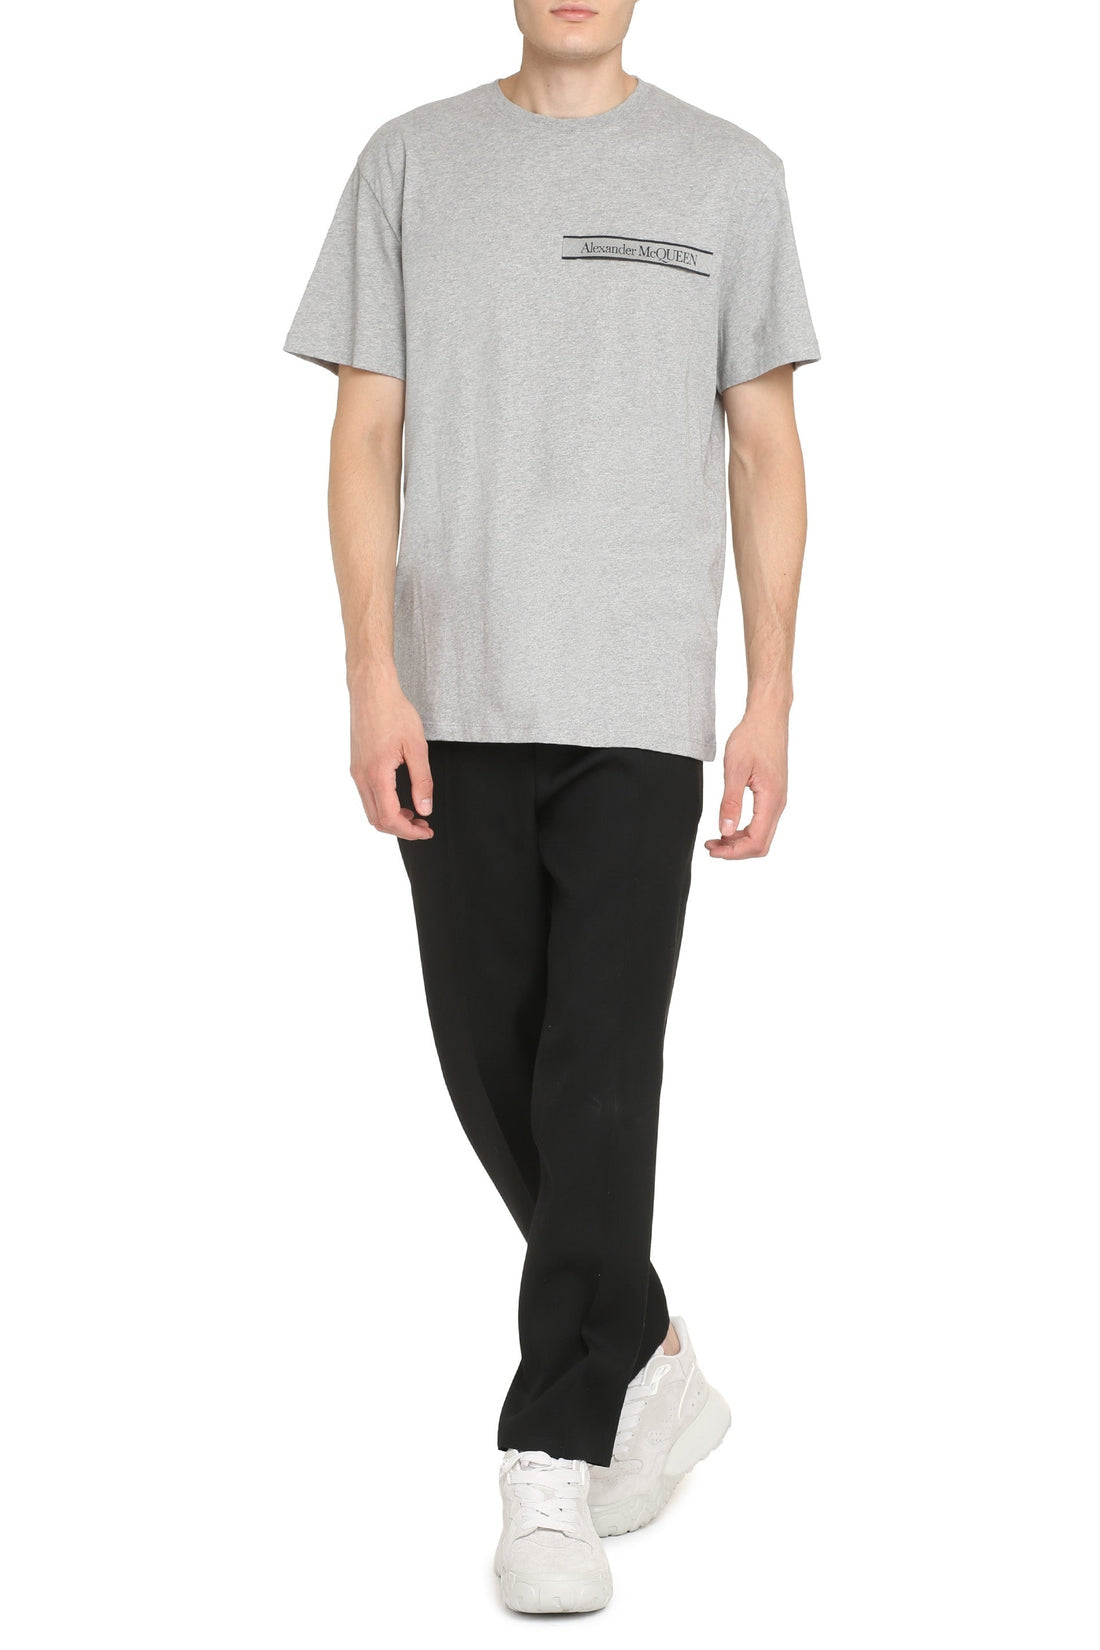 Alexander McQueen-OUTLET-SALE-Logo cotton t-shirt-ARCHIVIST